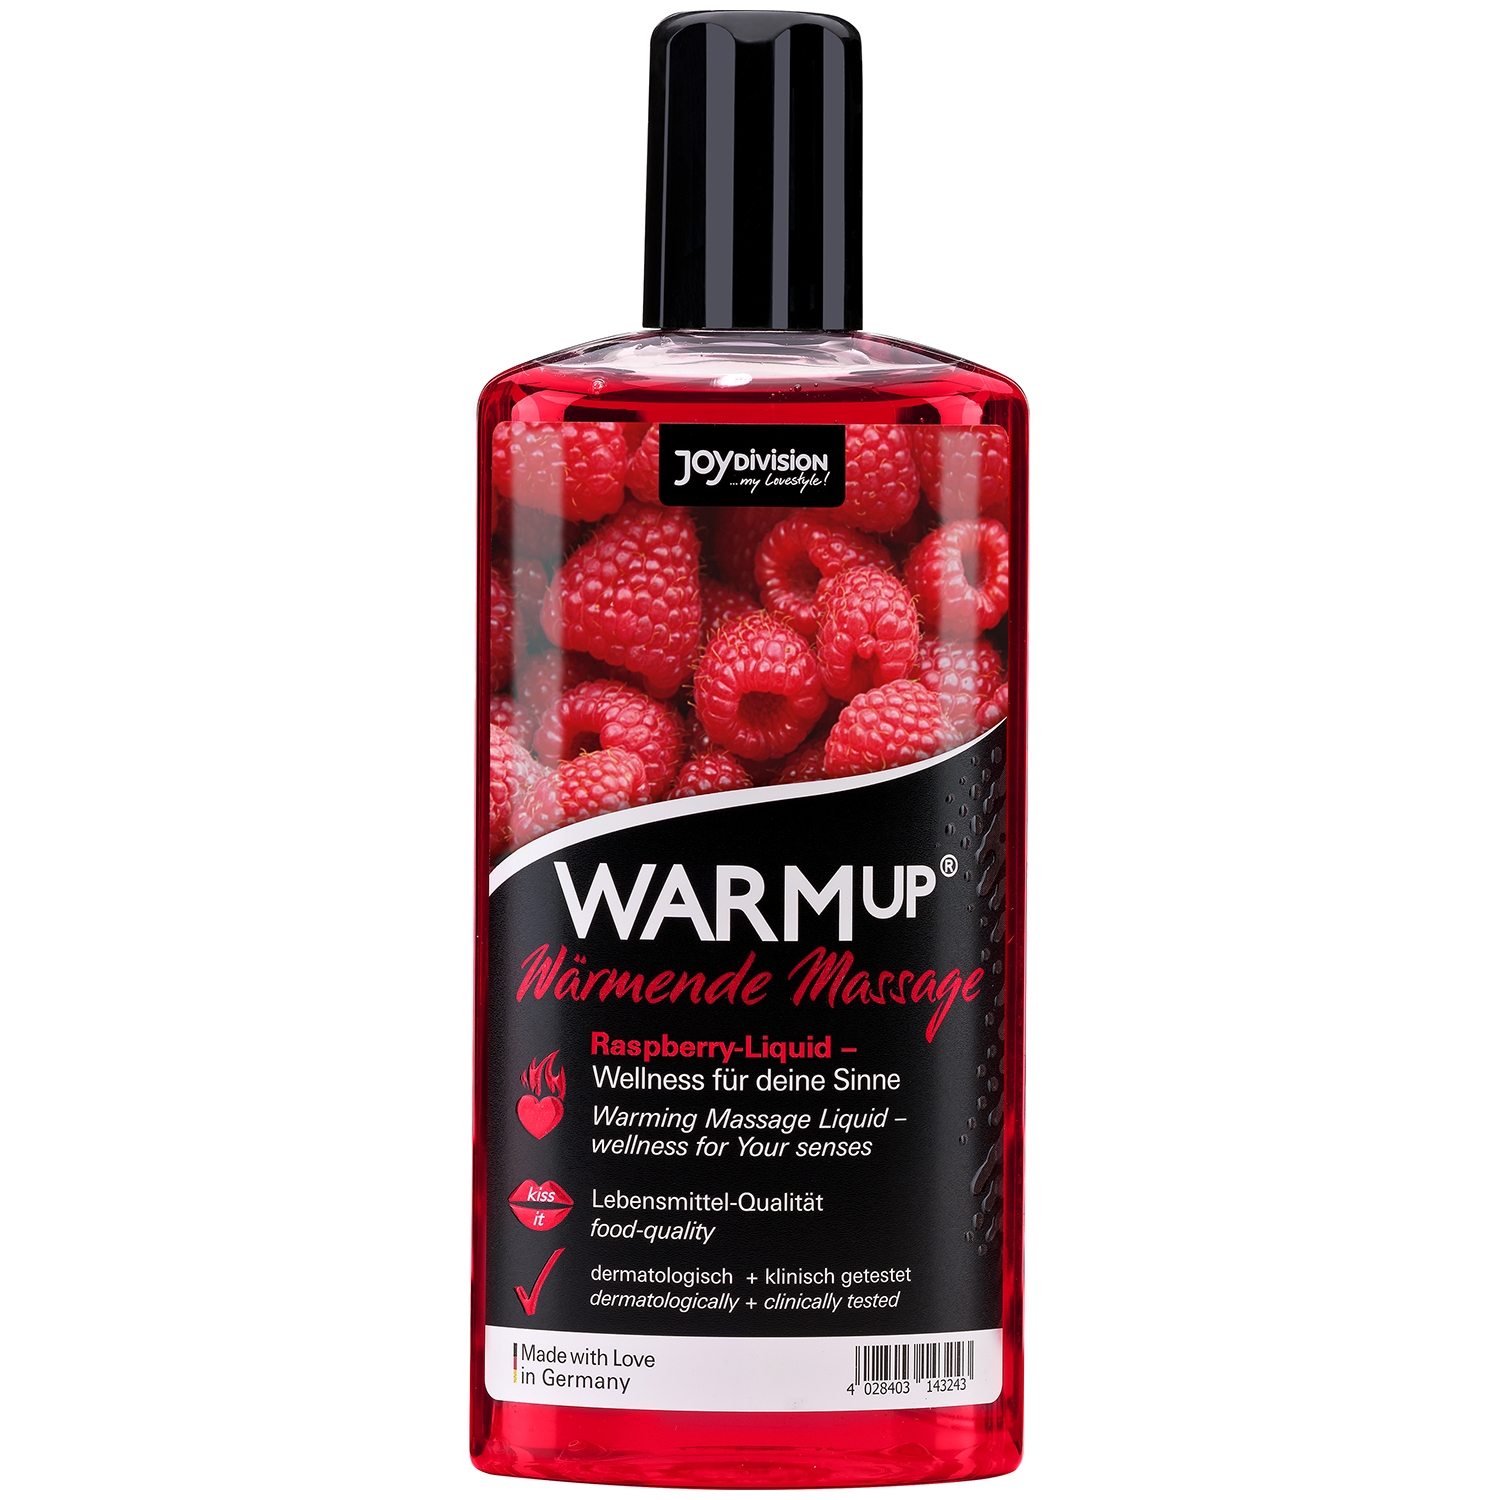 Joydivision WARMup Varmende Massageolie med Smag 150 ml - Red